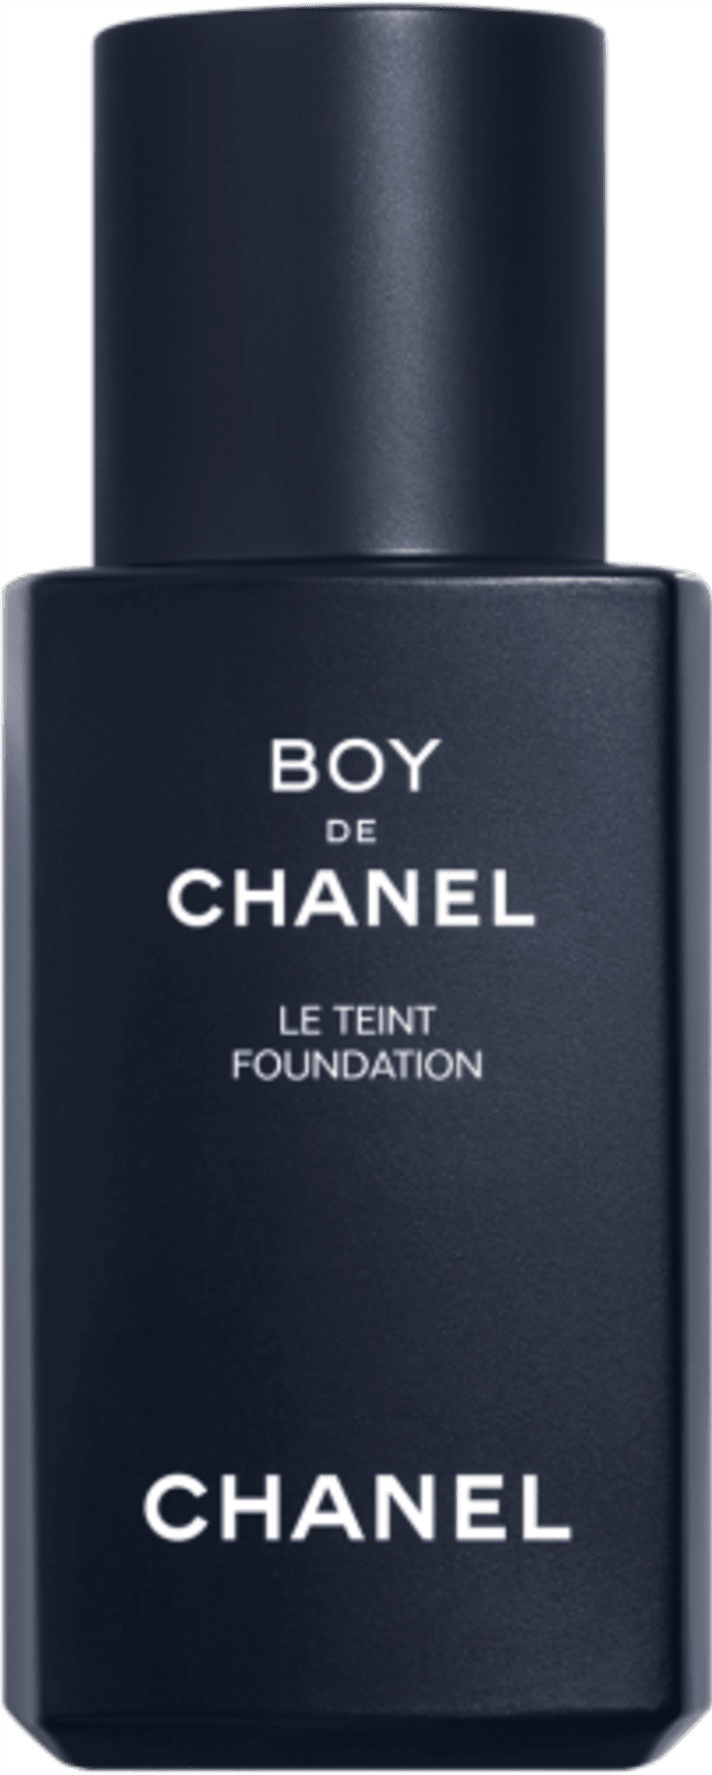 Chanel Boy De Chanel Foundation